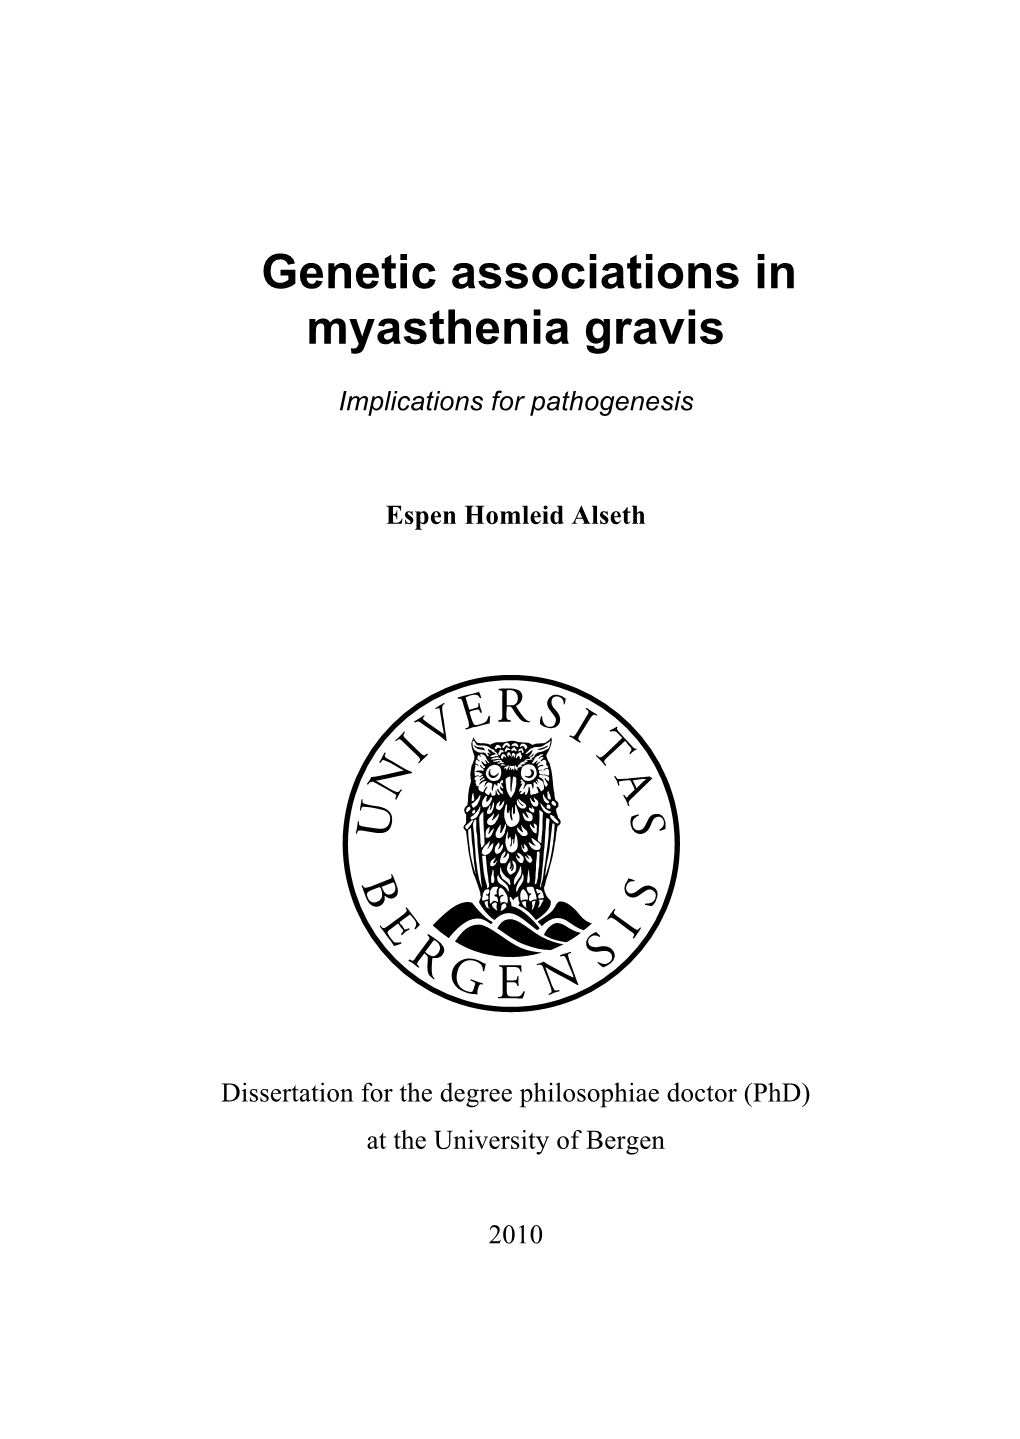 Genetic Associations in Myasthenia Gravis